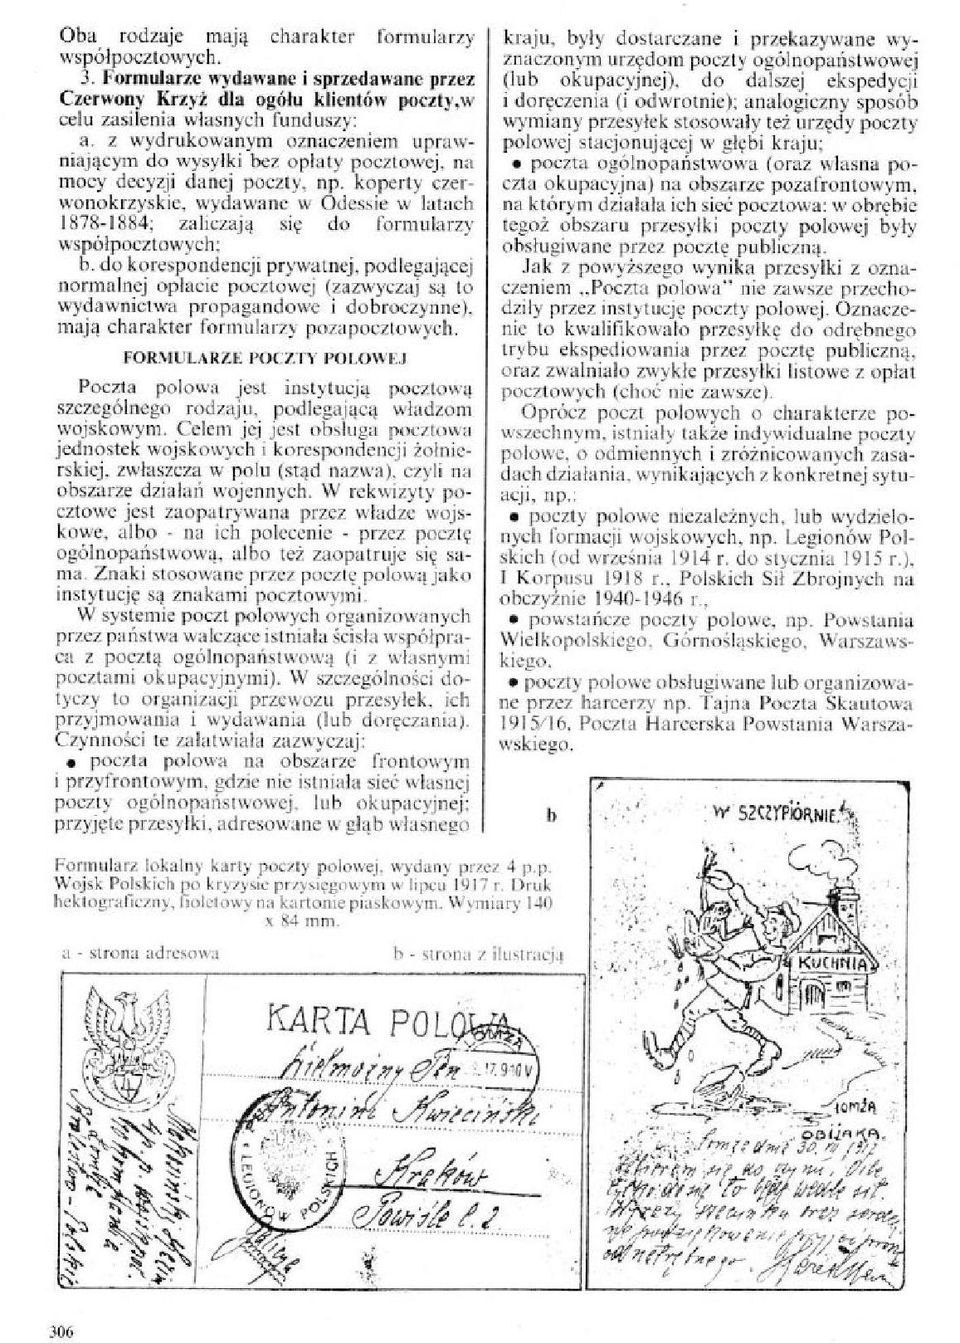 koperty czerwonokrzyskie, wydawane w Odessie w latach 1875-1884; zaliczają się do formularzy współpocztowych; b.